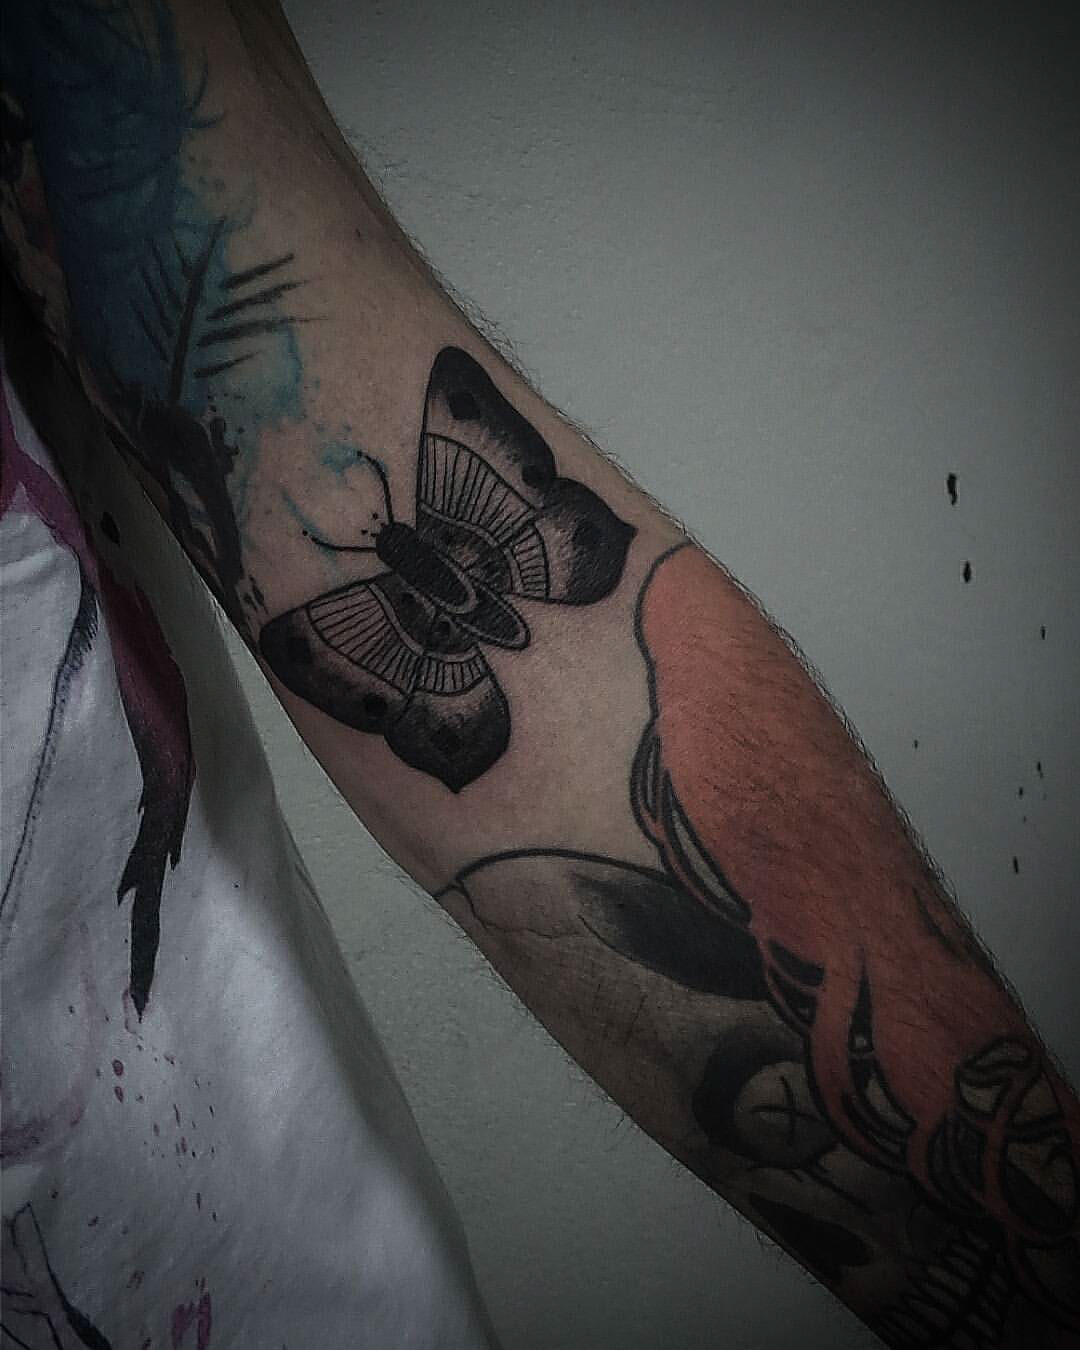 tattoo blackworkers josemarchioli Brazil pixeltattoo 8bittattoo surrealism